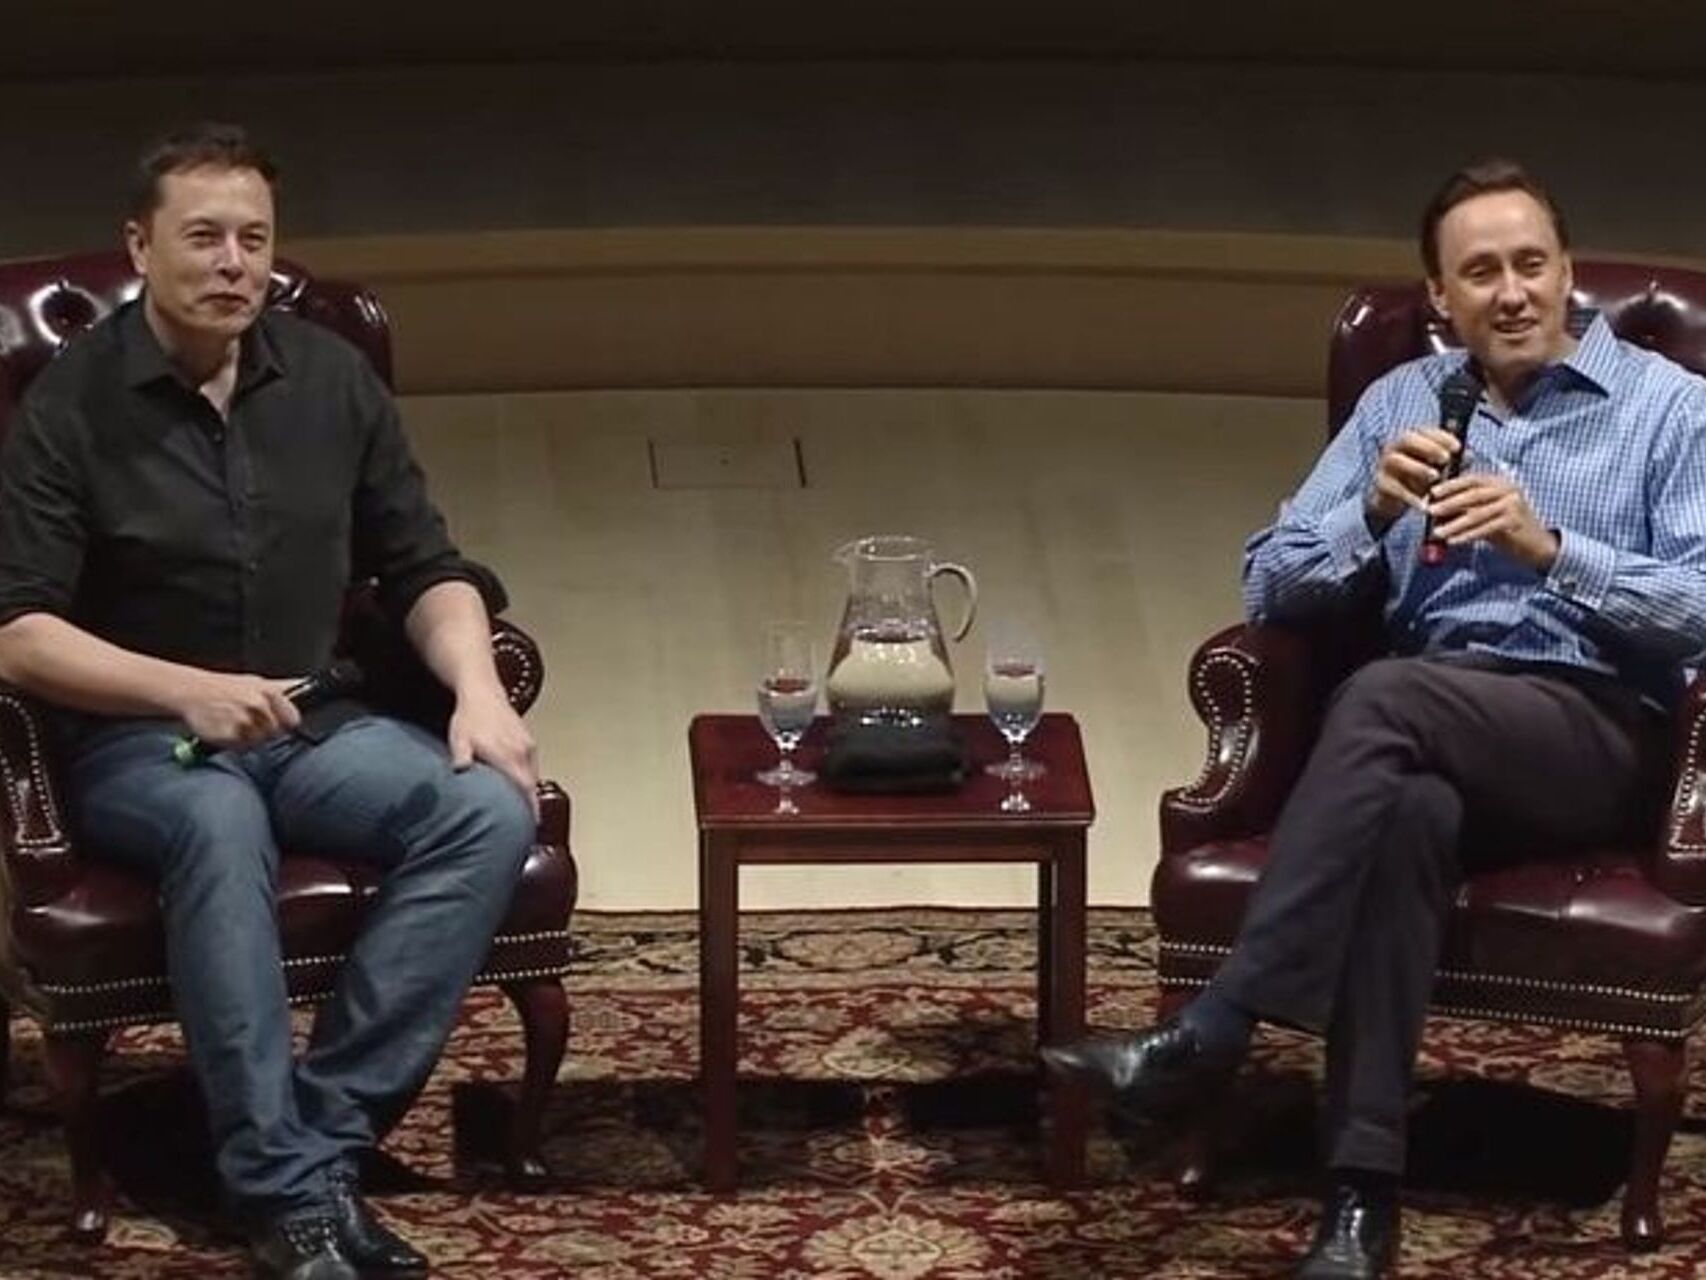 Samtale mellem den visionære iværksætter Elon Musk og den berømte investor Steve Jurvetson